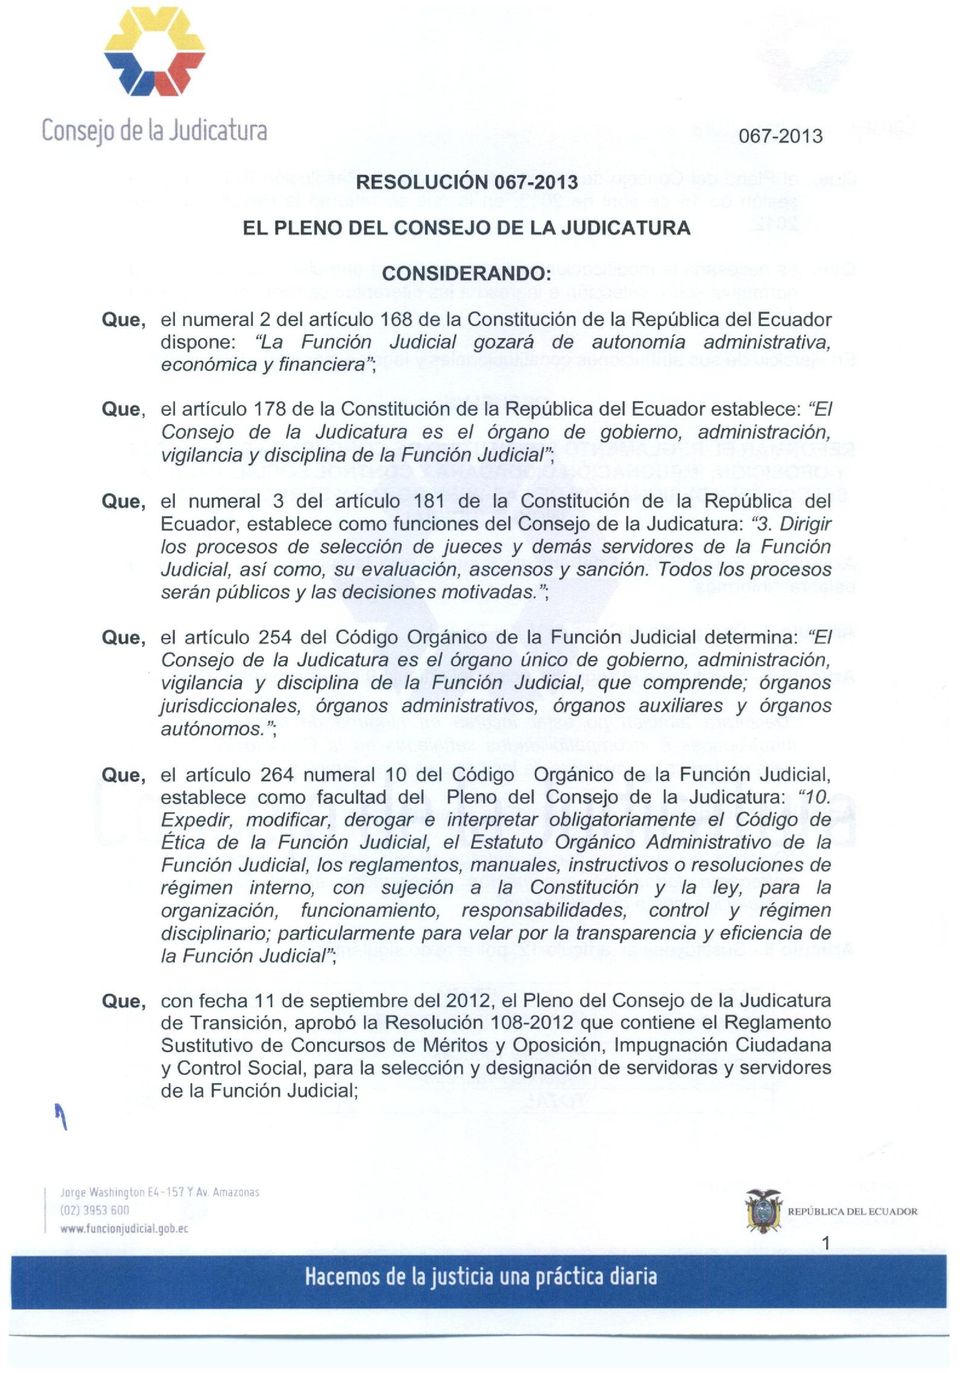 es el Organ de gobiemo, administraci6n, vigilancia y disciplina de la FunciOn Judicial"; Que, el numeral 3 del articulo 181 de la Constituci6n de la Republica del Ecuador, establece como funciones